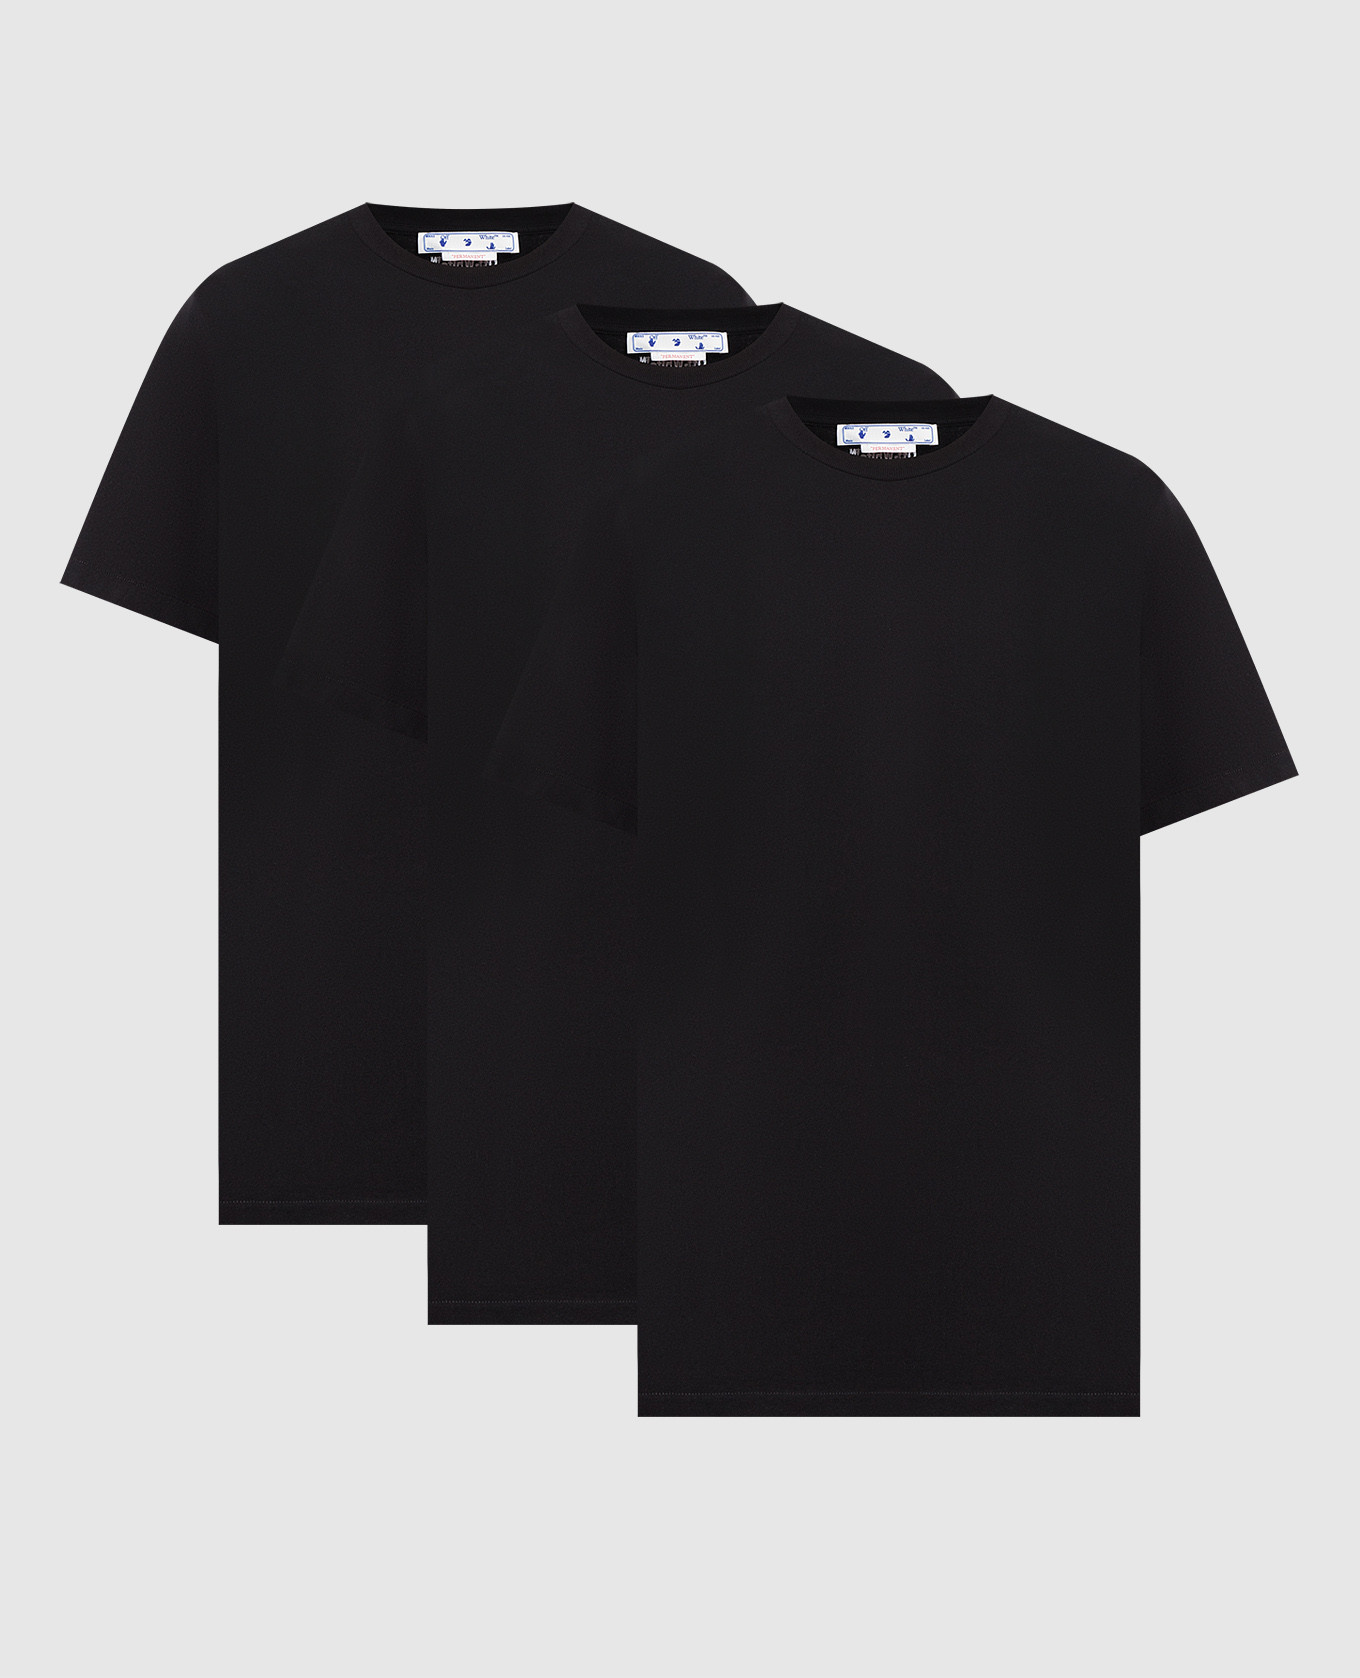 Набор черных футболок с логотипом вышивки.